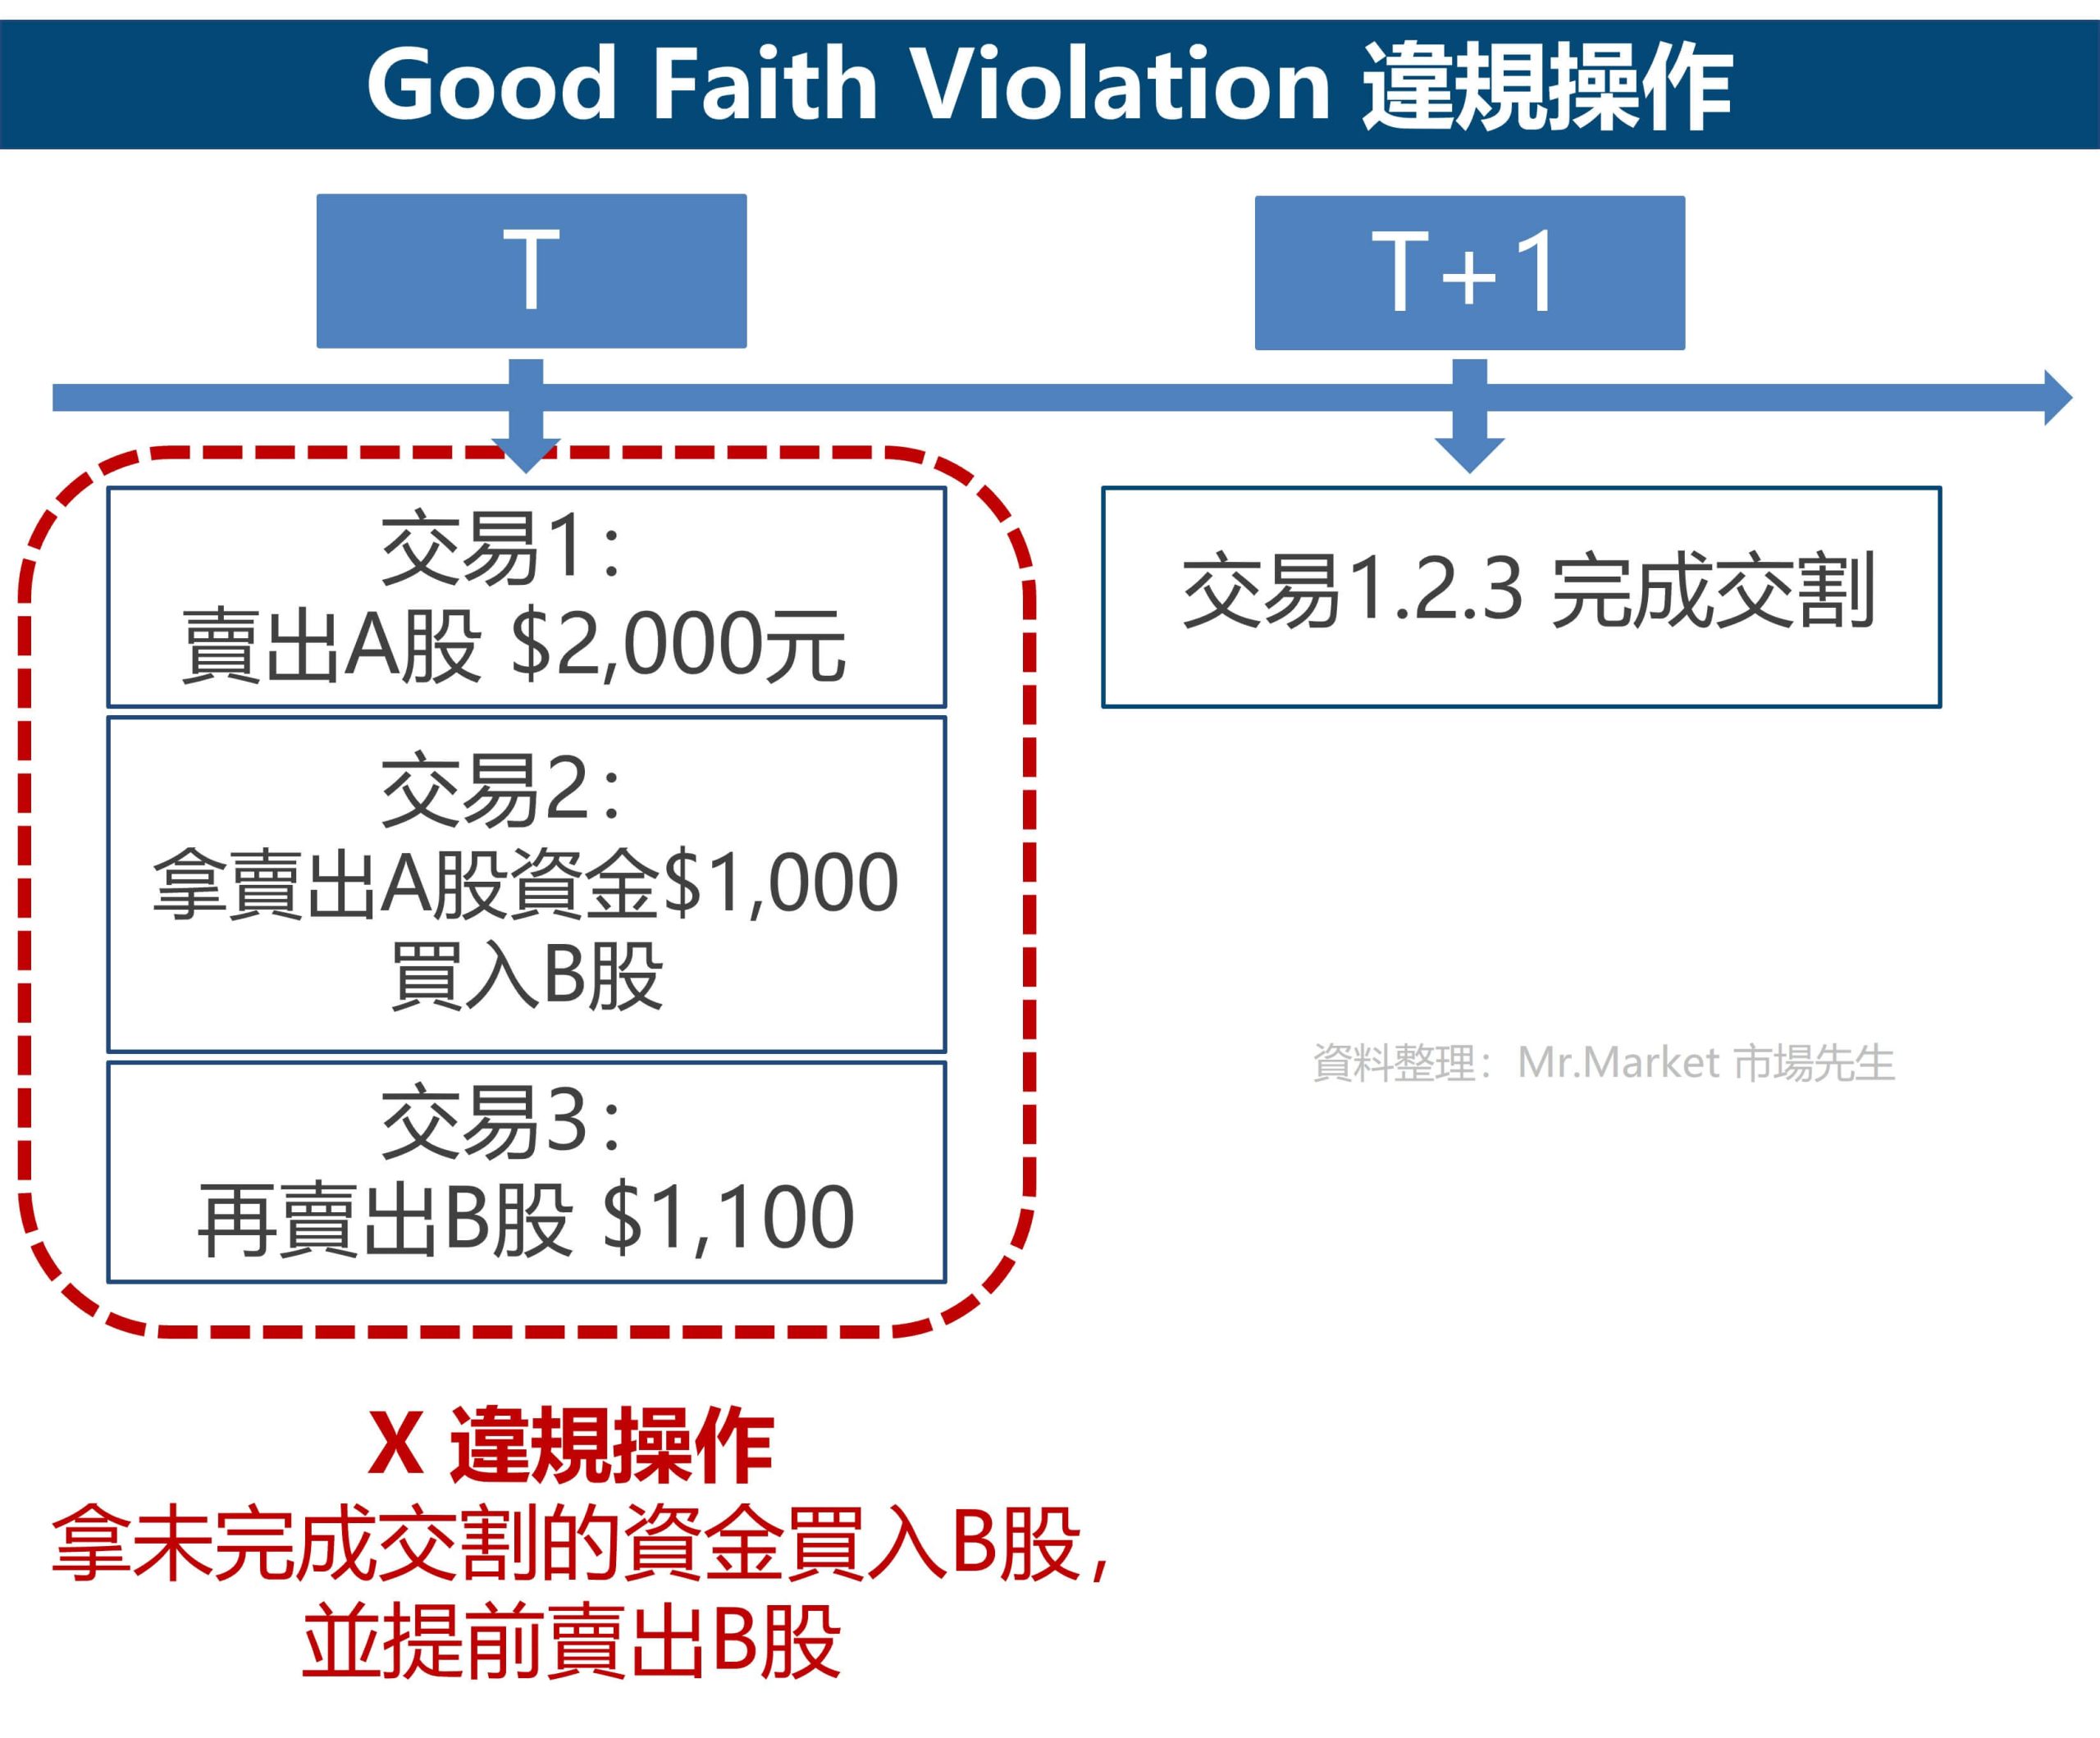 Good Faith Violation 違規操作 